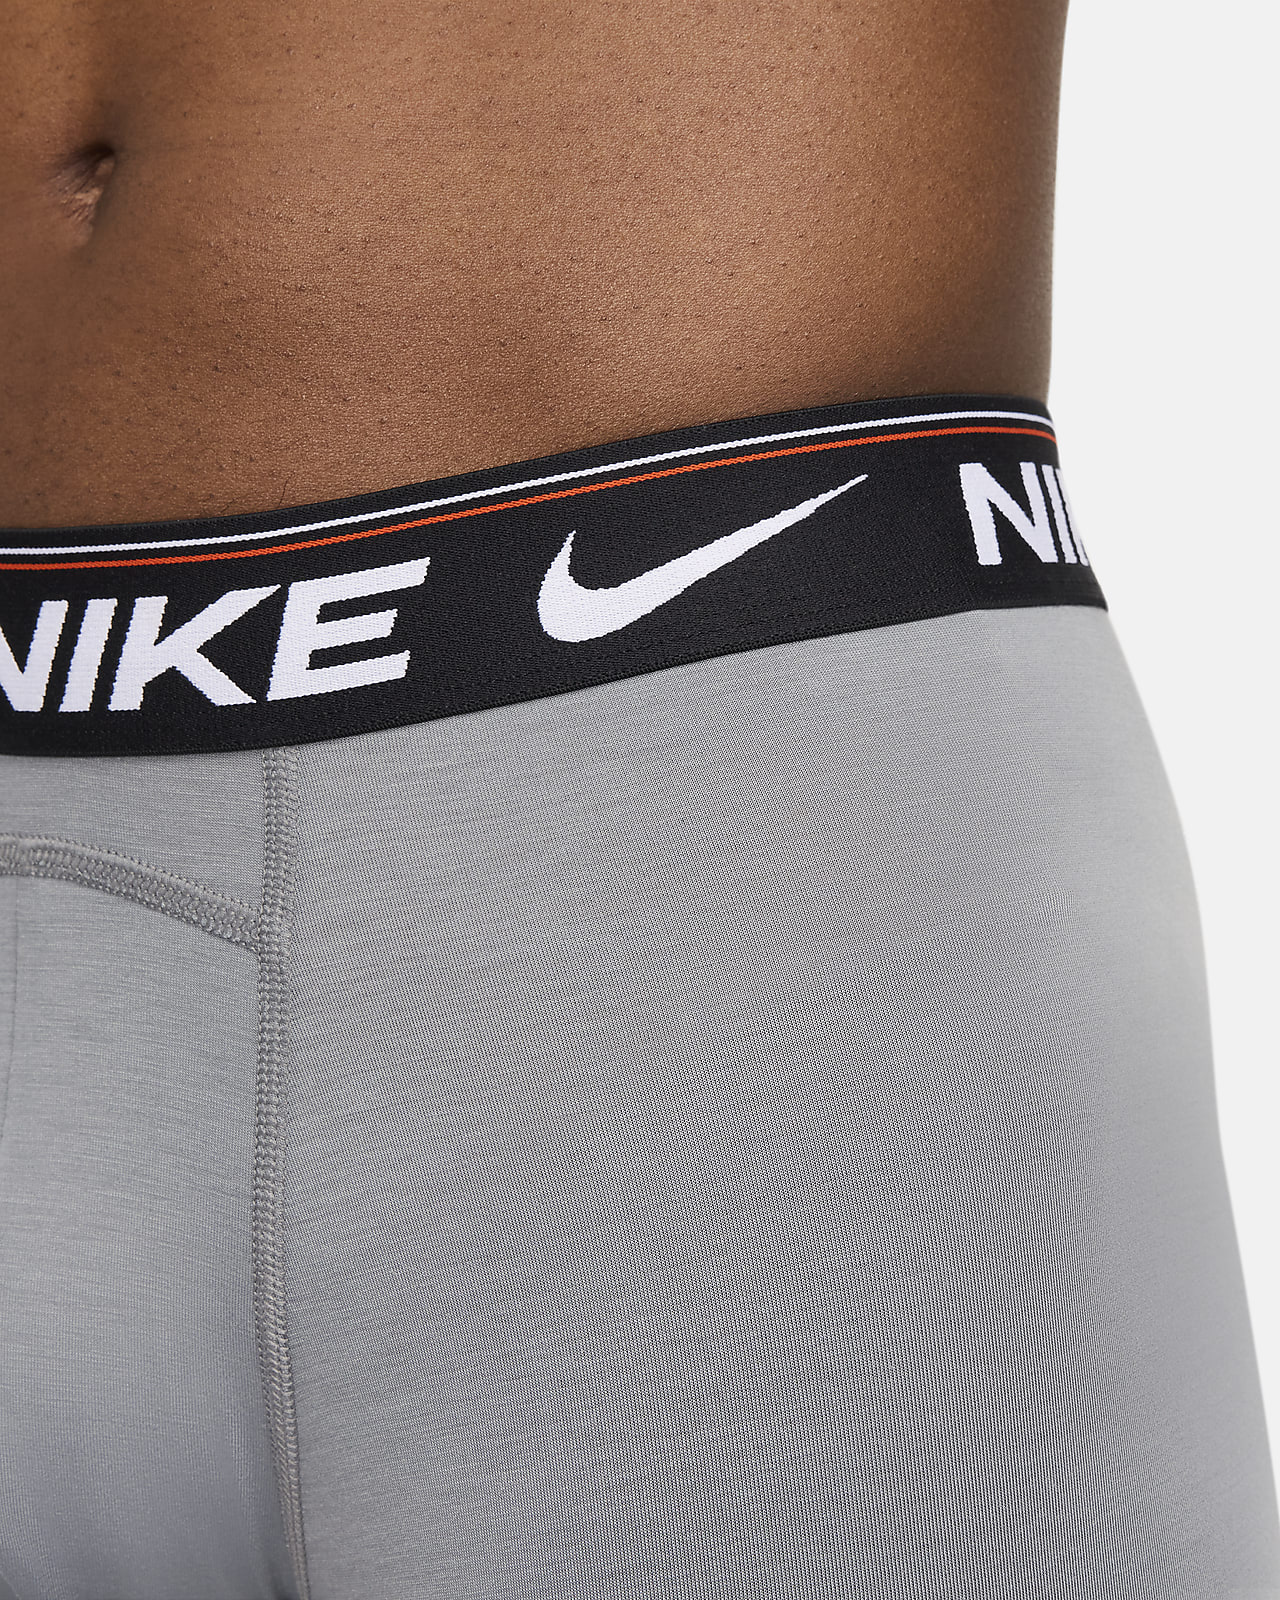 Nike Dri-FIT Ultra Comfort Men's Boxer Briefs (3-Pack)